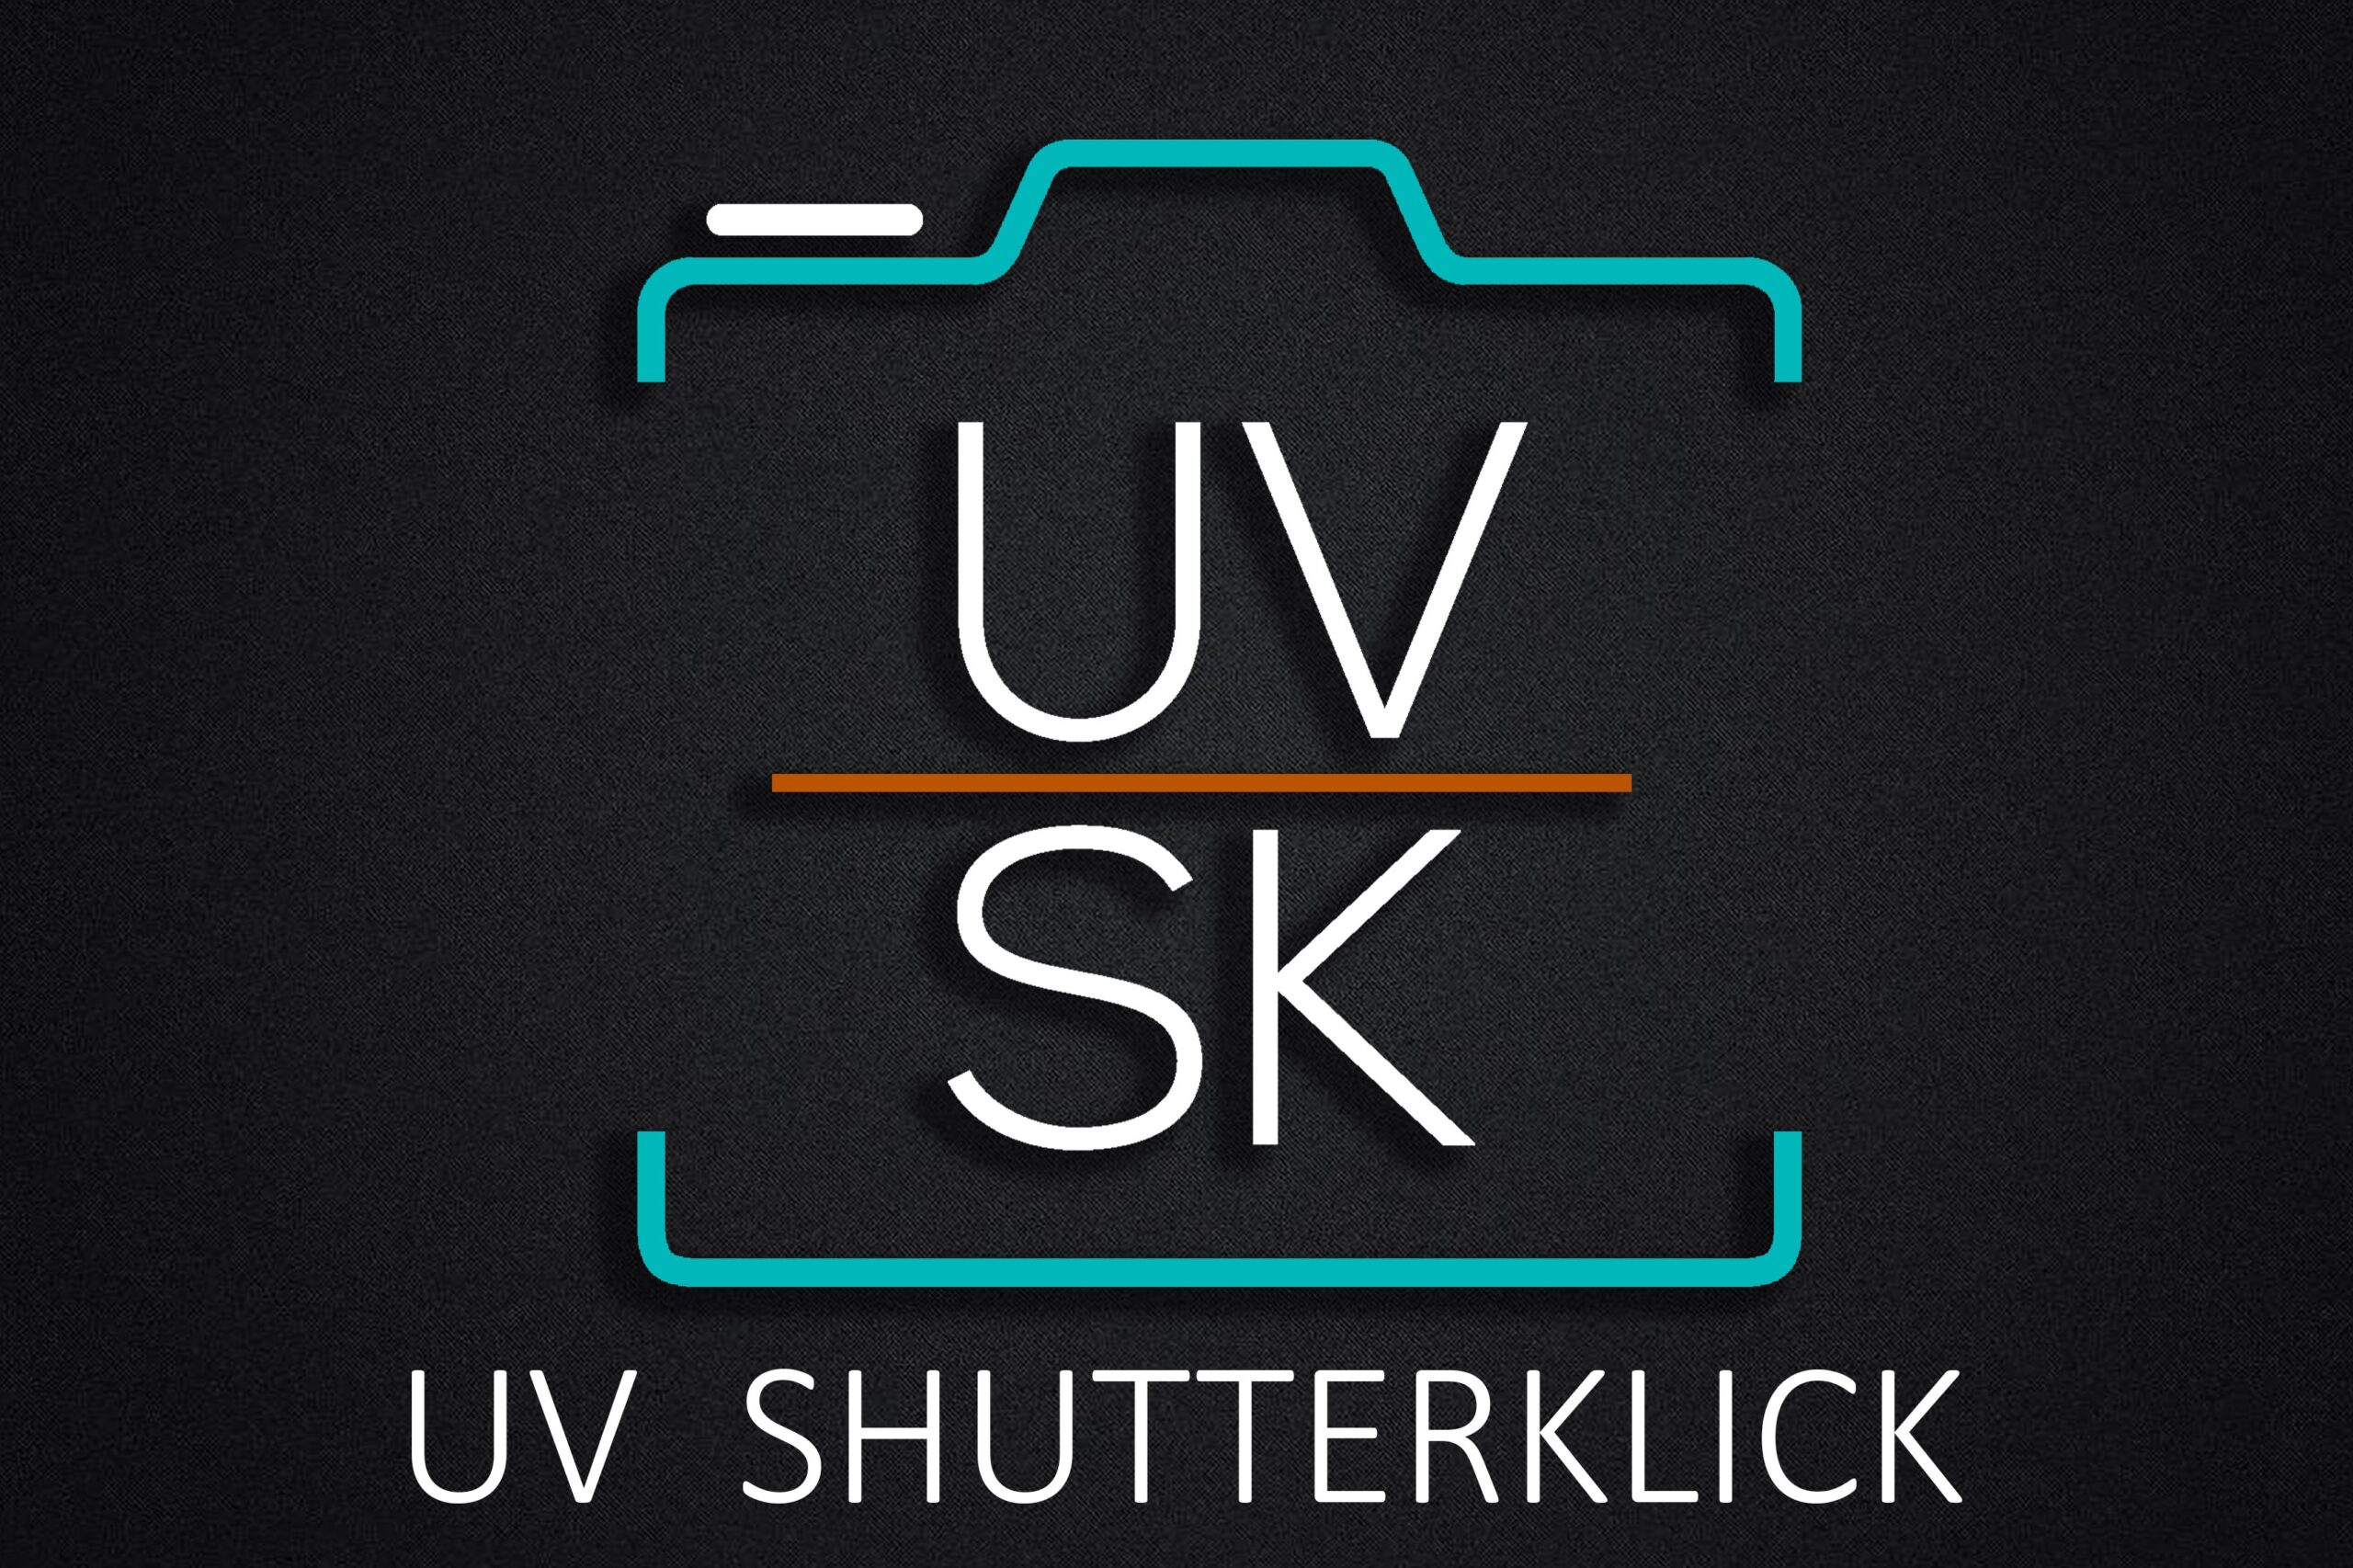 UV ShutterKlick